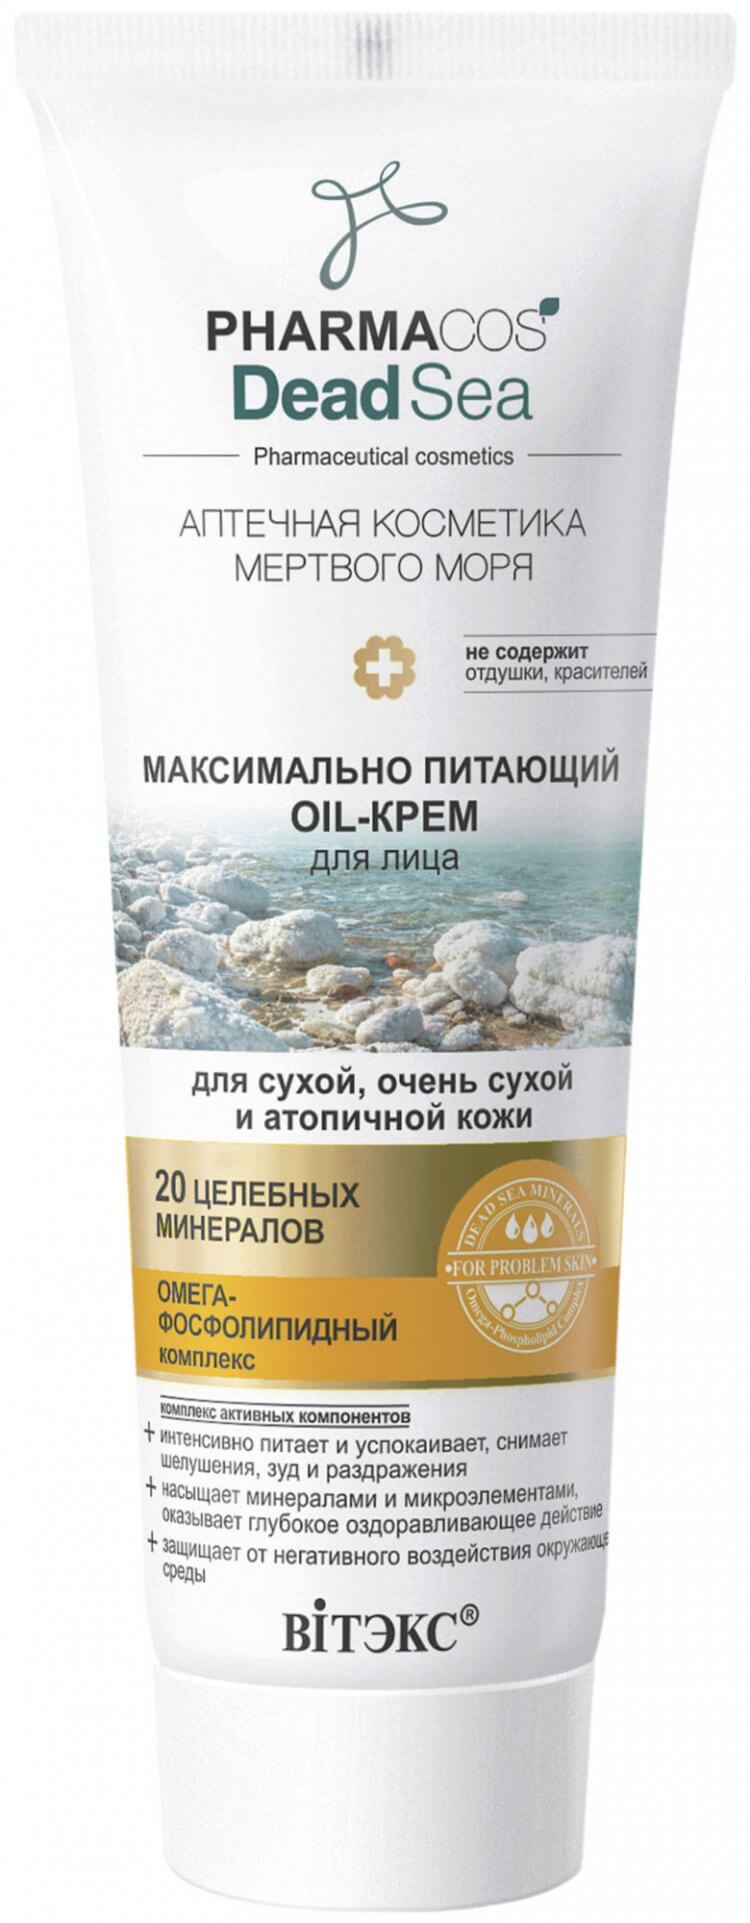 Oil-крем для лица максимально питающий для очень сухой кожи Pharmacos Dead Sea, 75мл Belita